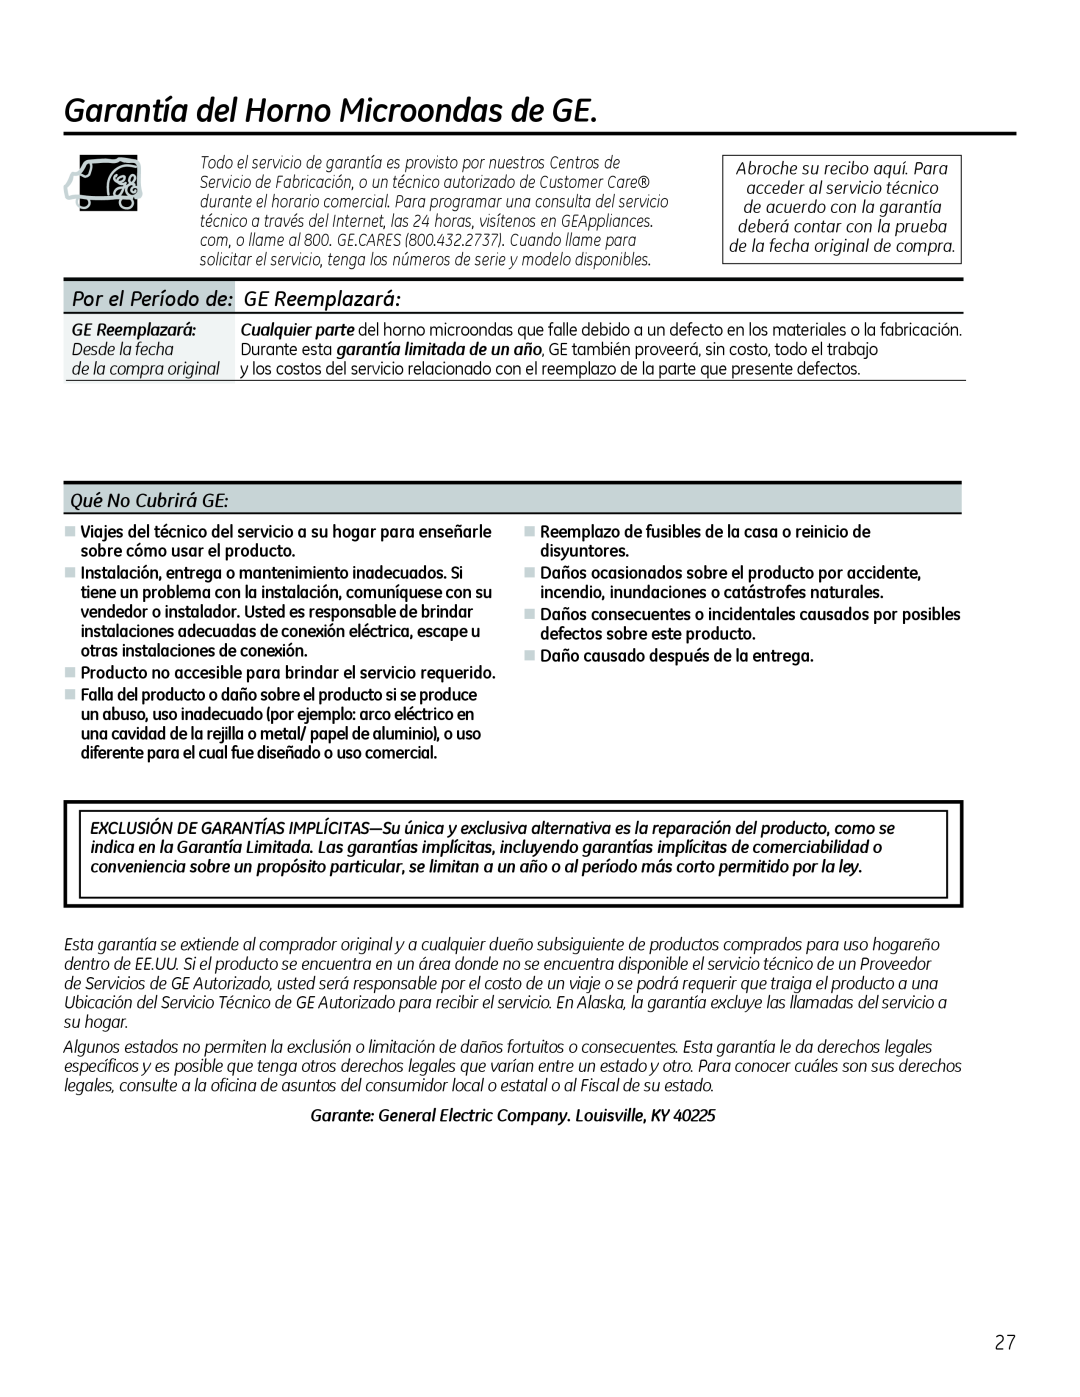 GE Microwave Oven owner manual Garantía del Horno Microondas de GE, Qué No Cubrirá GE, GE Reemplazará 